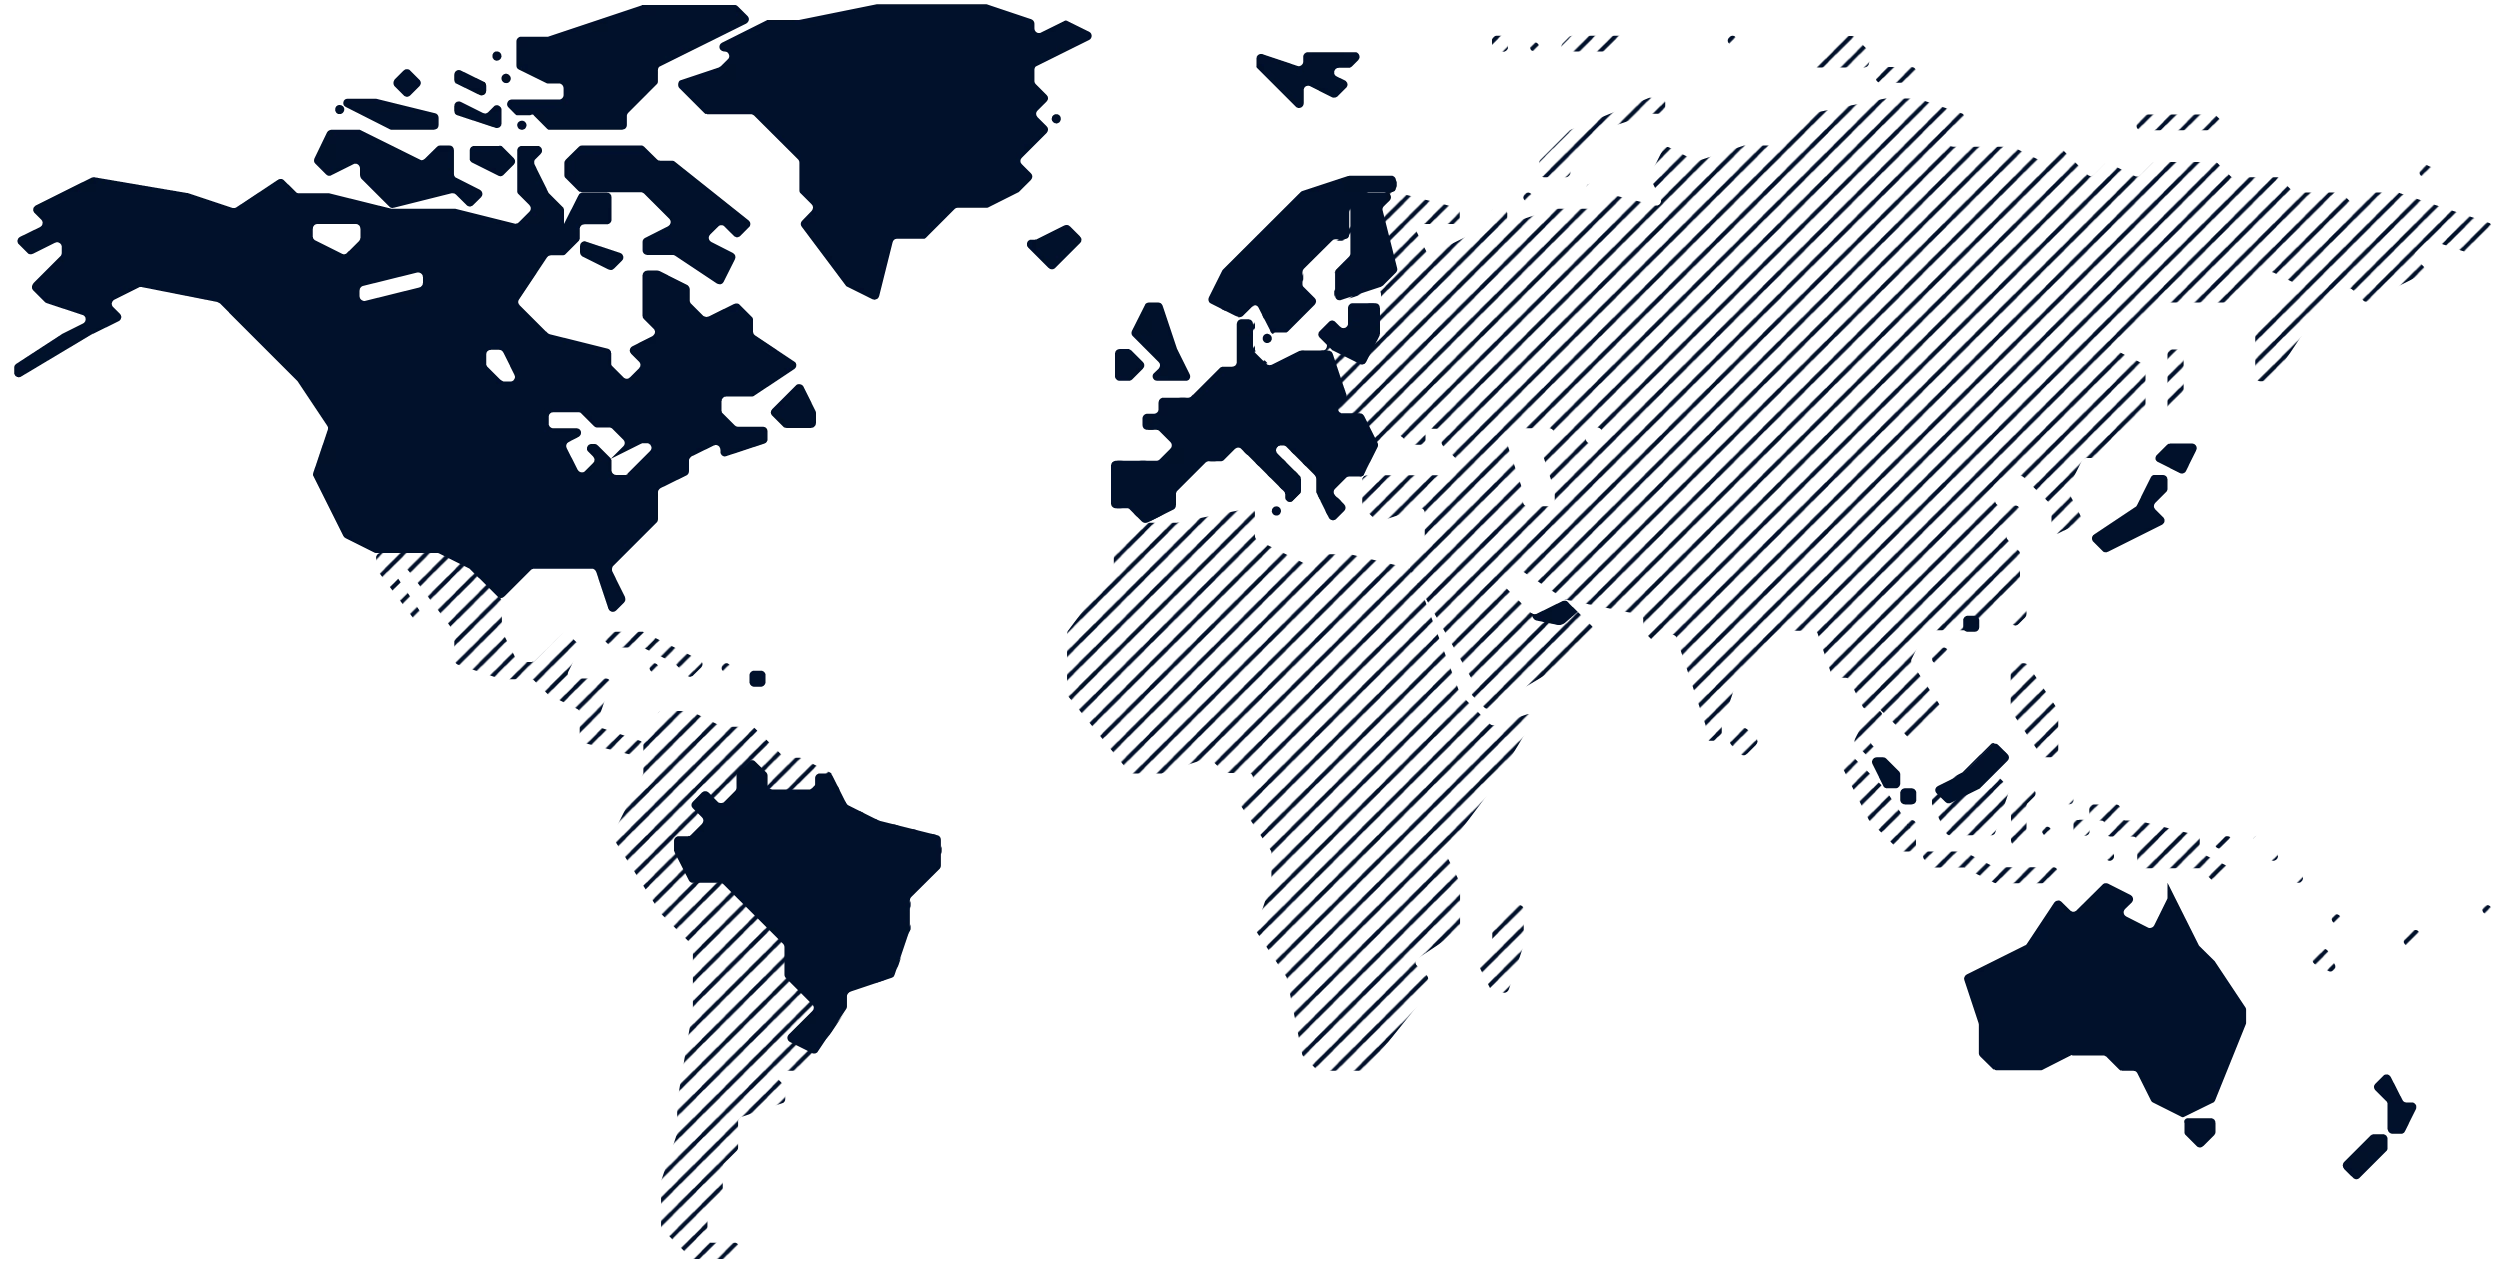 Une carte montrant la couverture d'Adyen Acquiring dans le monde